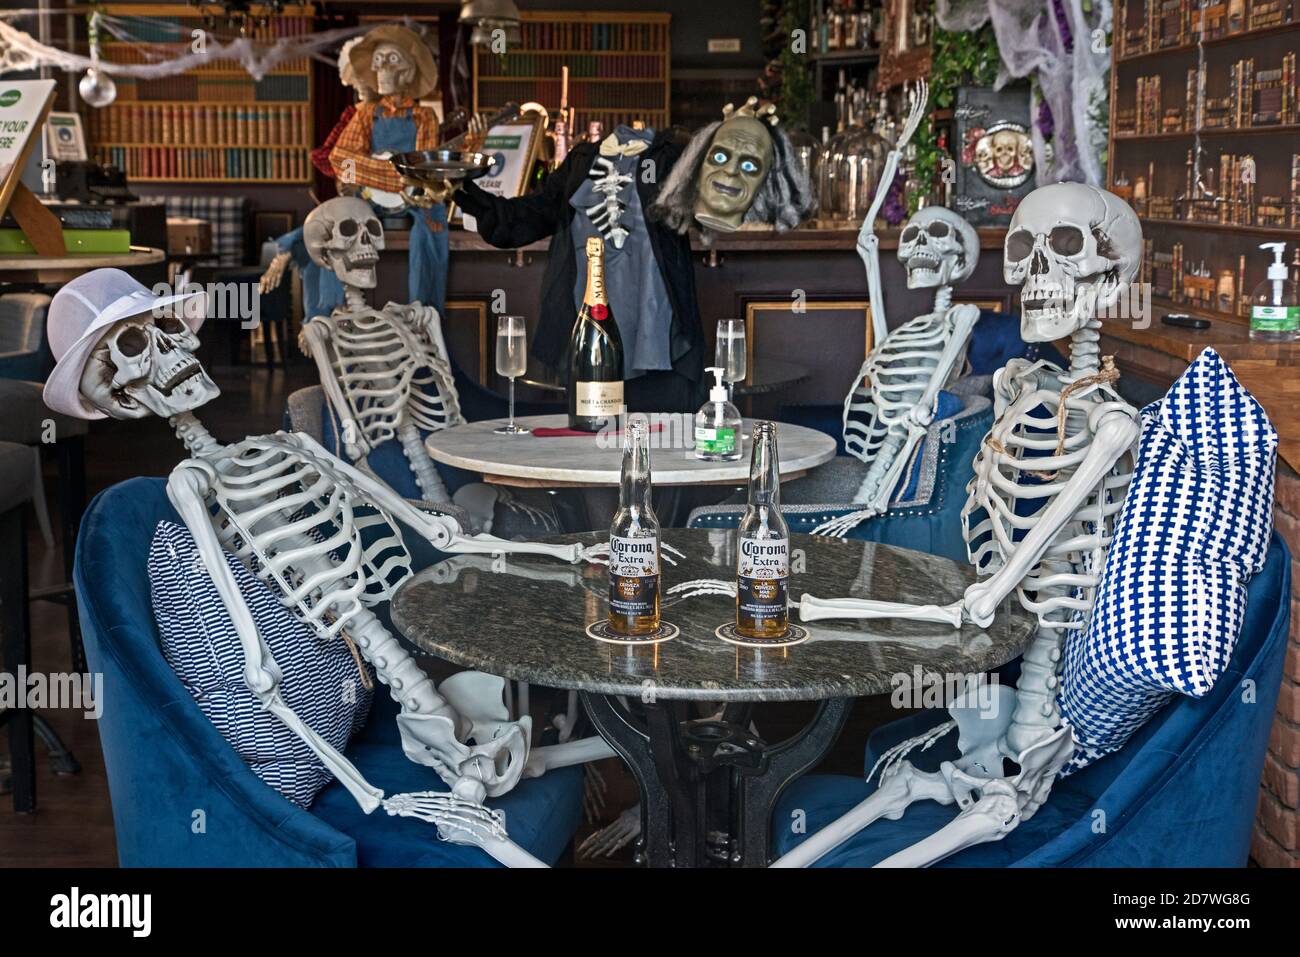 Hemingway's Restaurant in Leith aufgrund von Covid-Einschränkungen geschlossen, erleichtert die Stimmung mit einem Halloween-Display. Edinburgh, Schottland, Großbritannien. Stockfoto